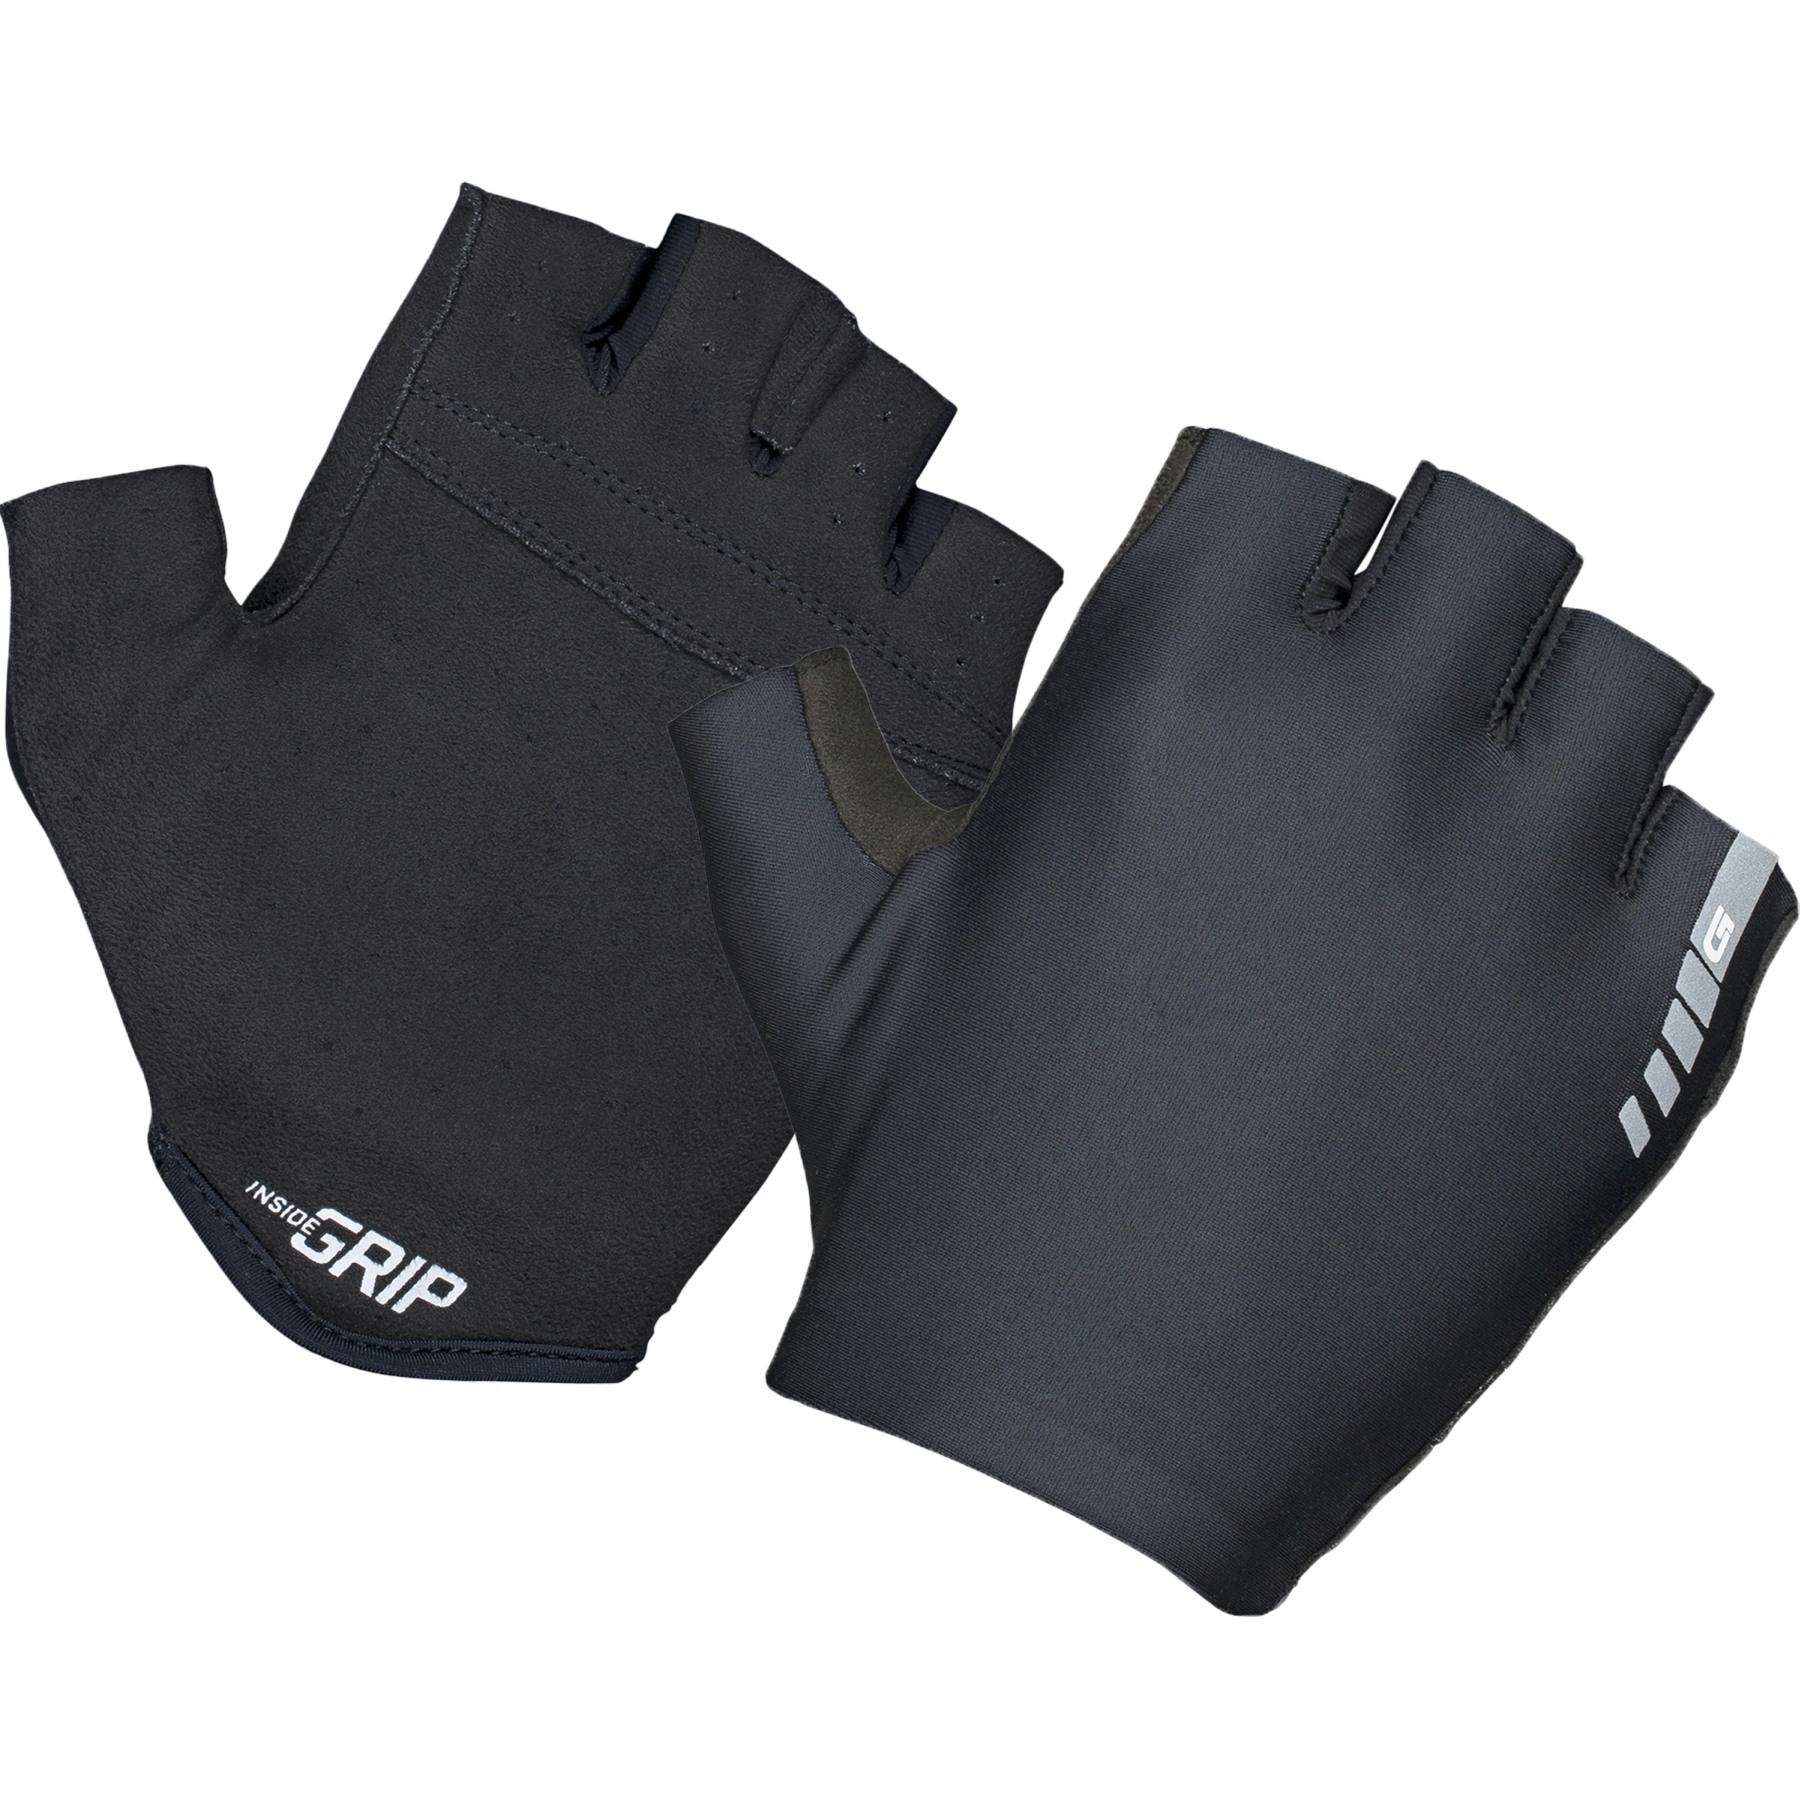 Produktbild von GripGrab Aerolite InsideGrip™ Kurzfinger Handschuhe - Black